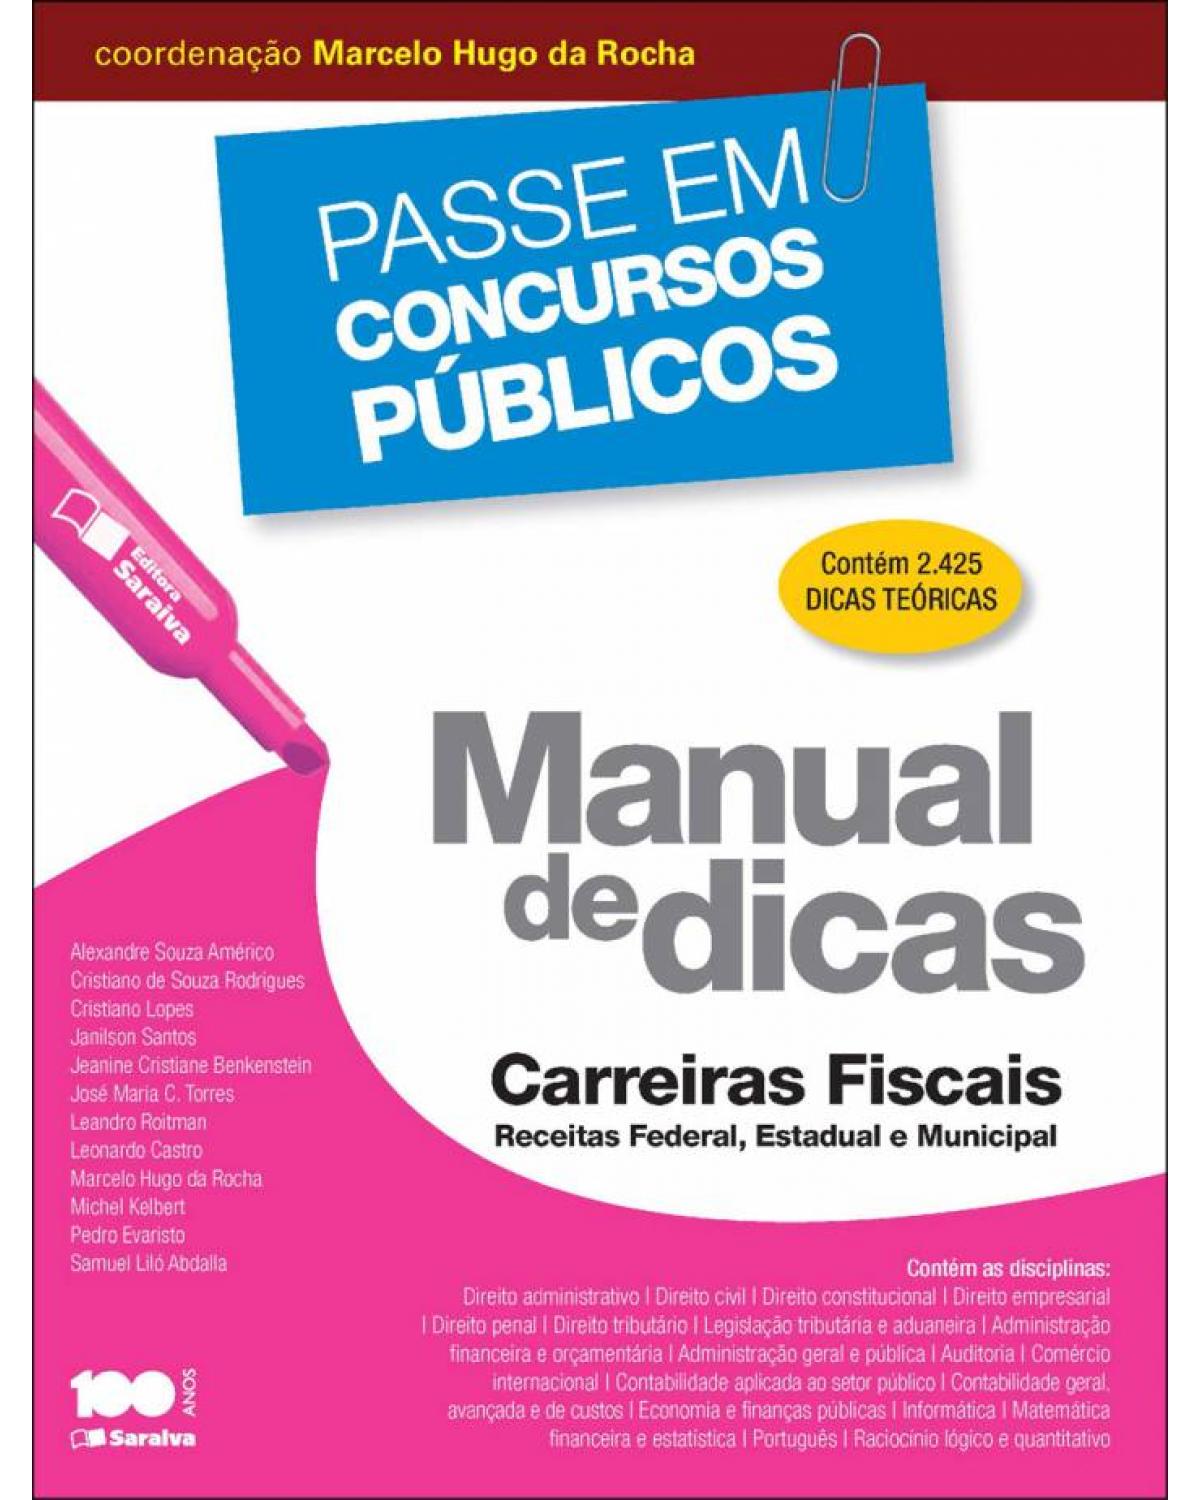 Manual de dicas - carreiras fiscais - Receitas federal, estadual e municipal - 1ª Edição | 2014